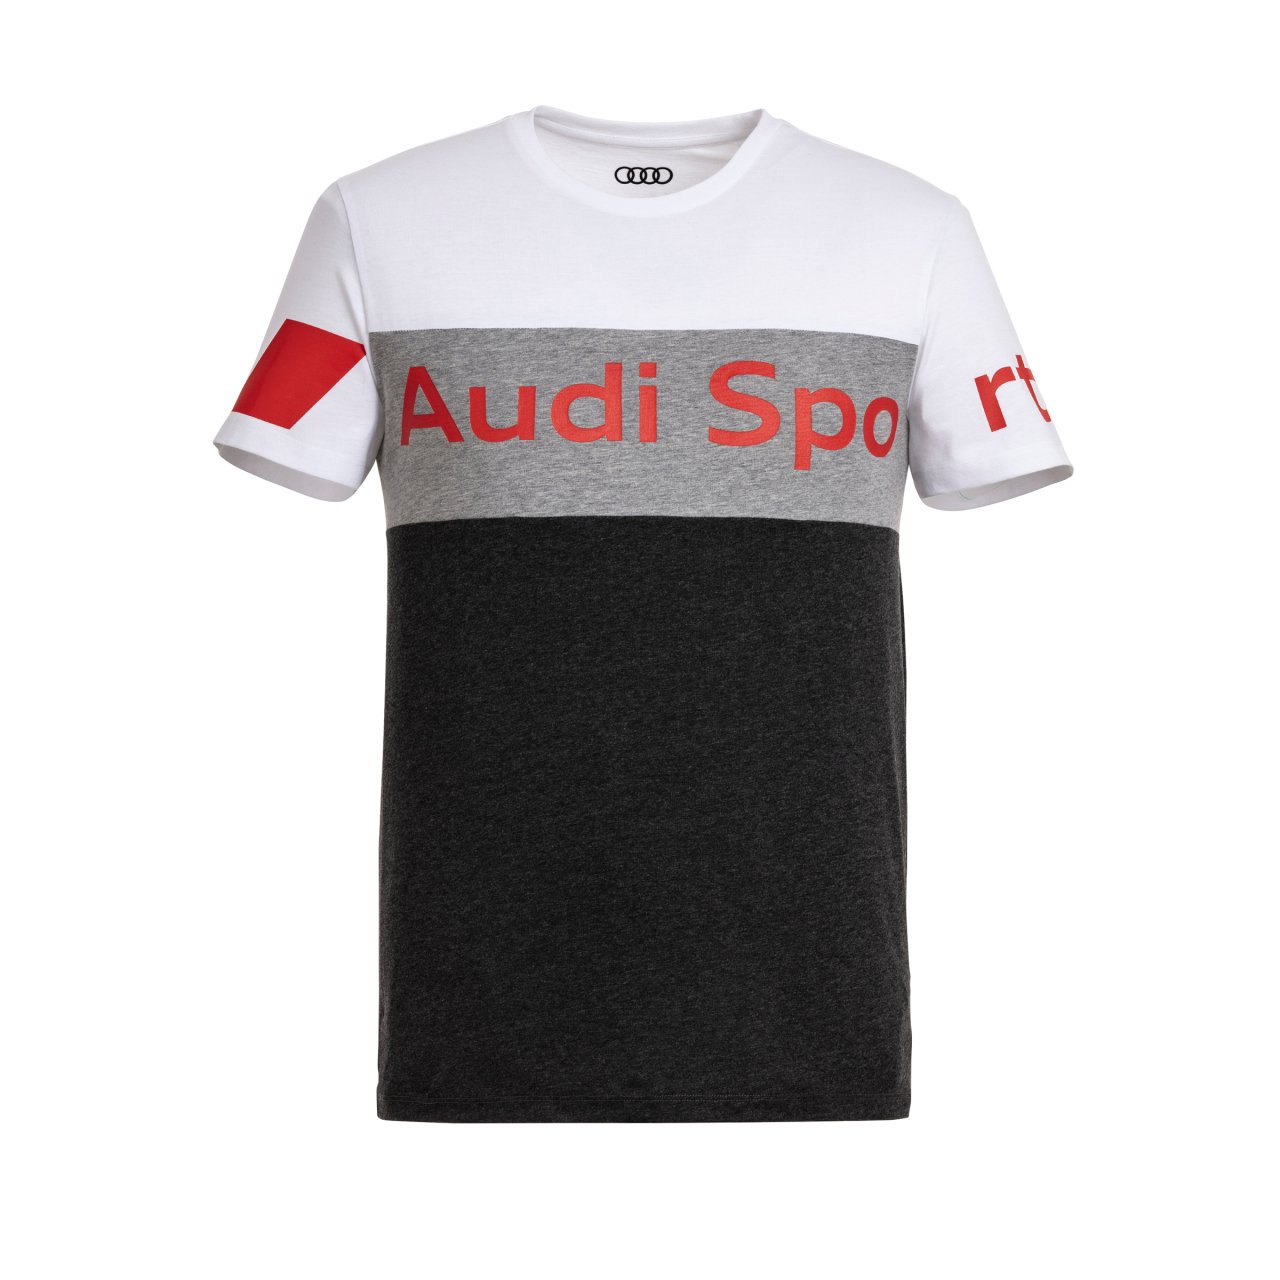 Audi Sport - Audi Sport T-Shirt, Herren, grau/weiß S